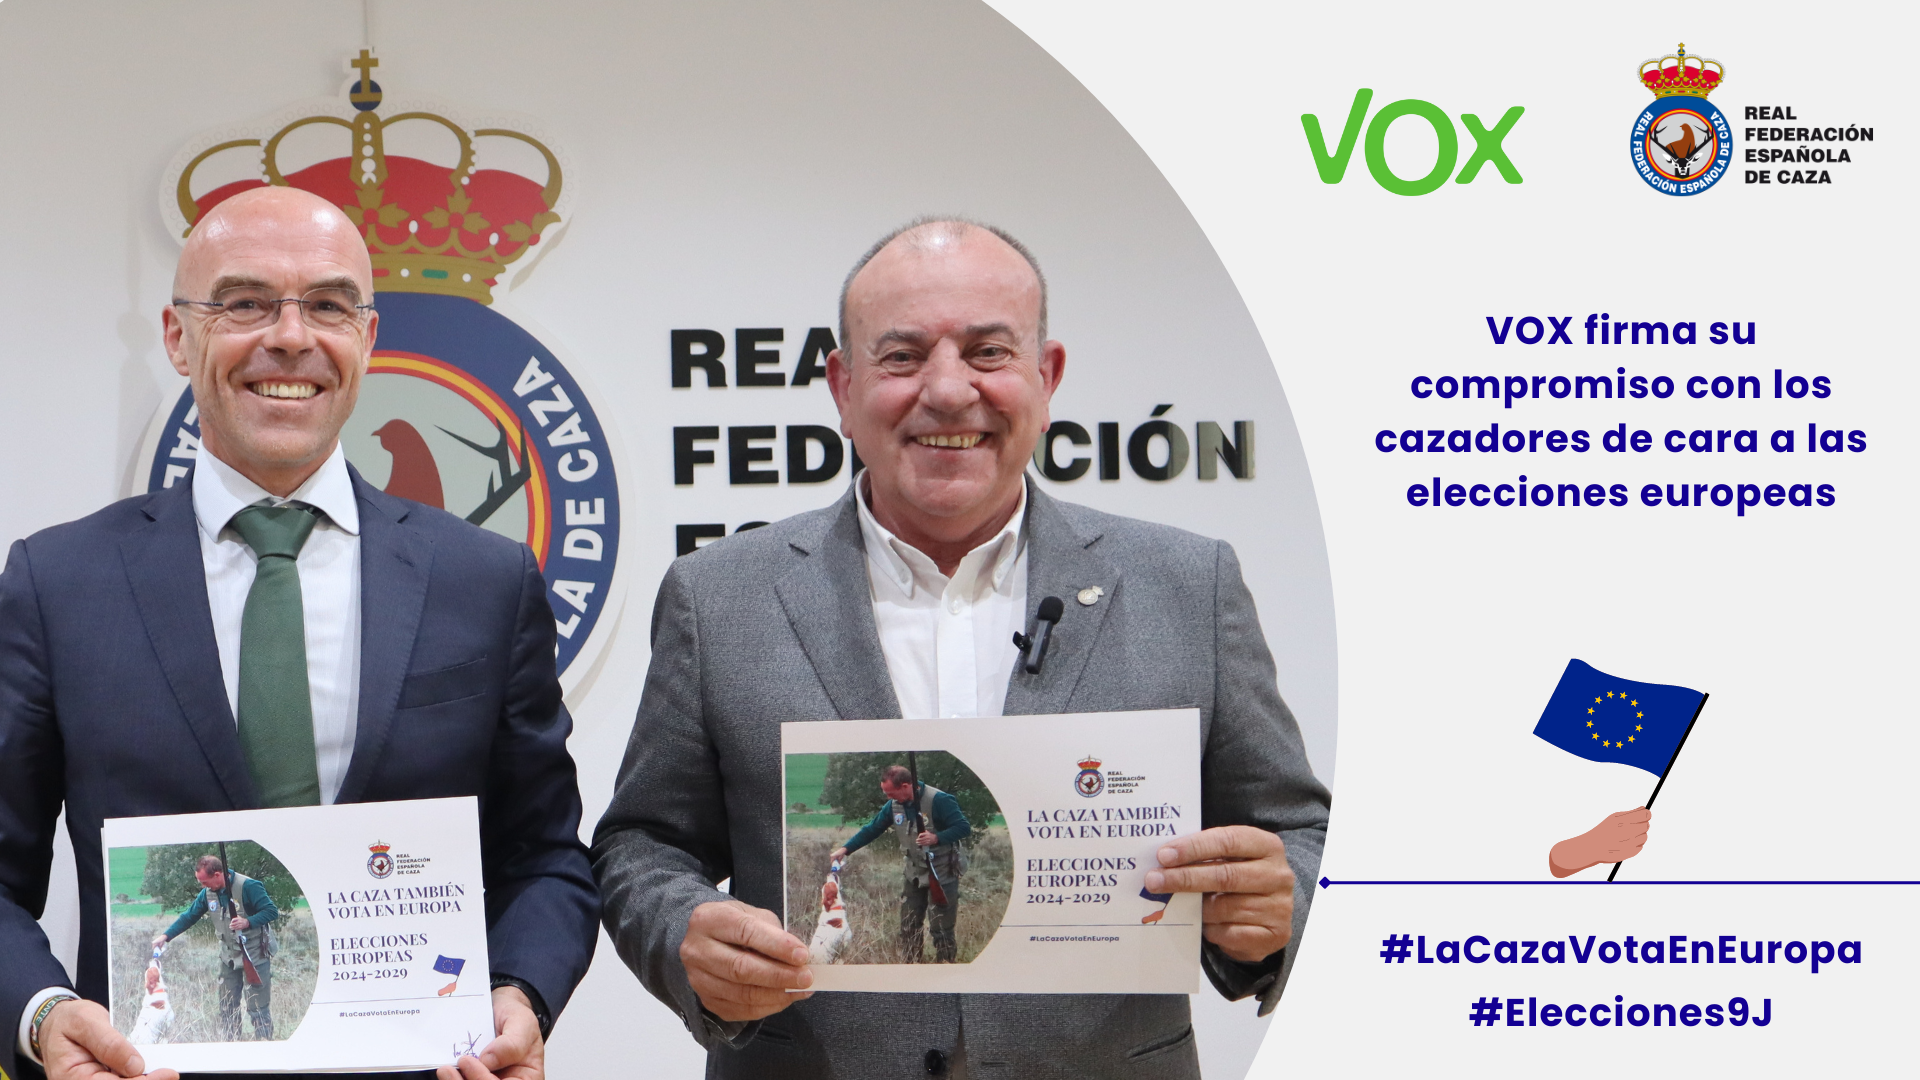 VOX firma su compromiso con los cazadores de cara a las elecciones europeas